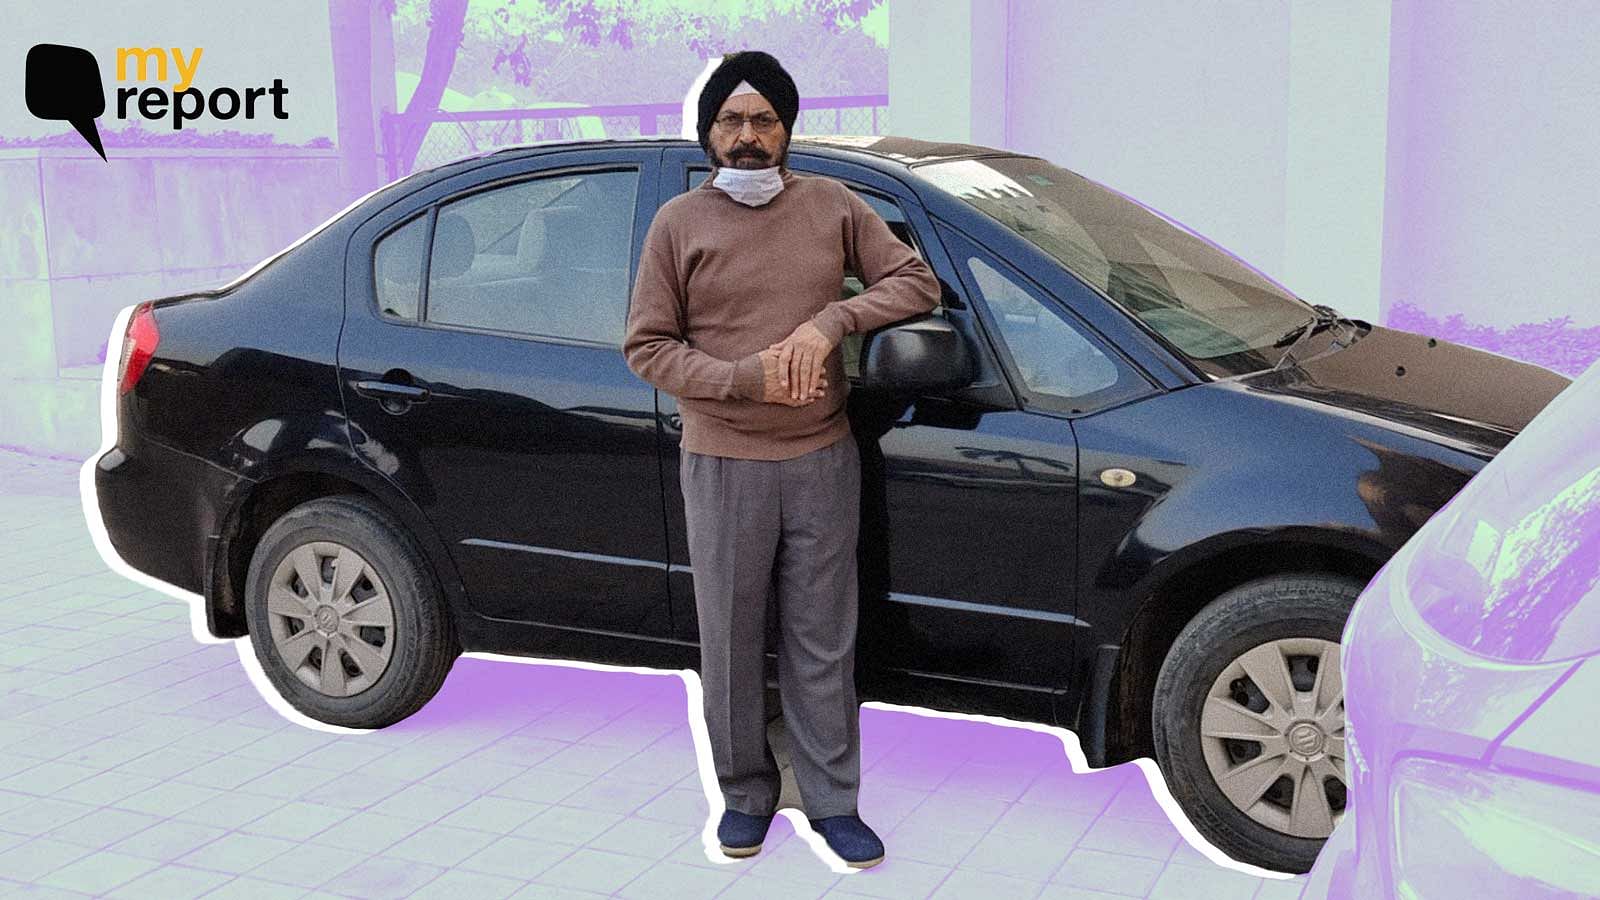 <div class="paragraphs"><p>Tejinder Singh Bedi with his old car.</p></div>